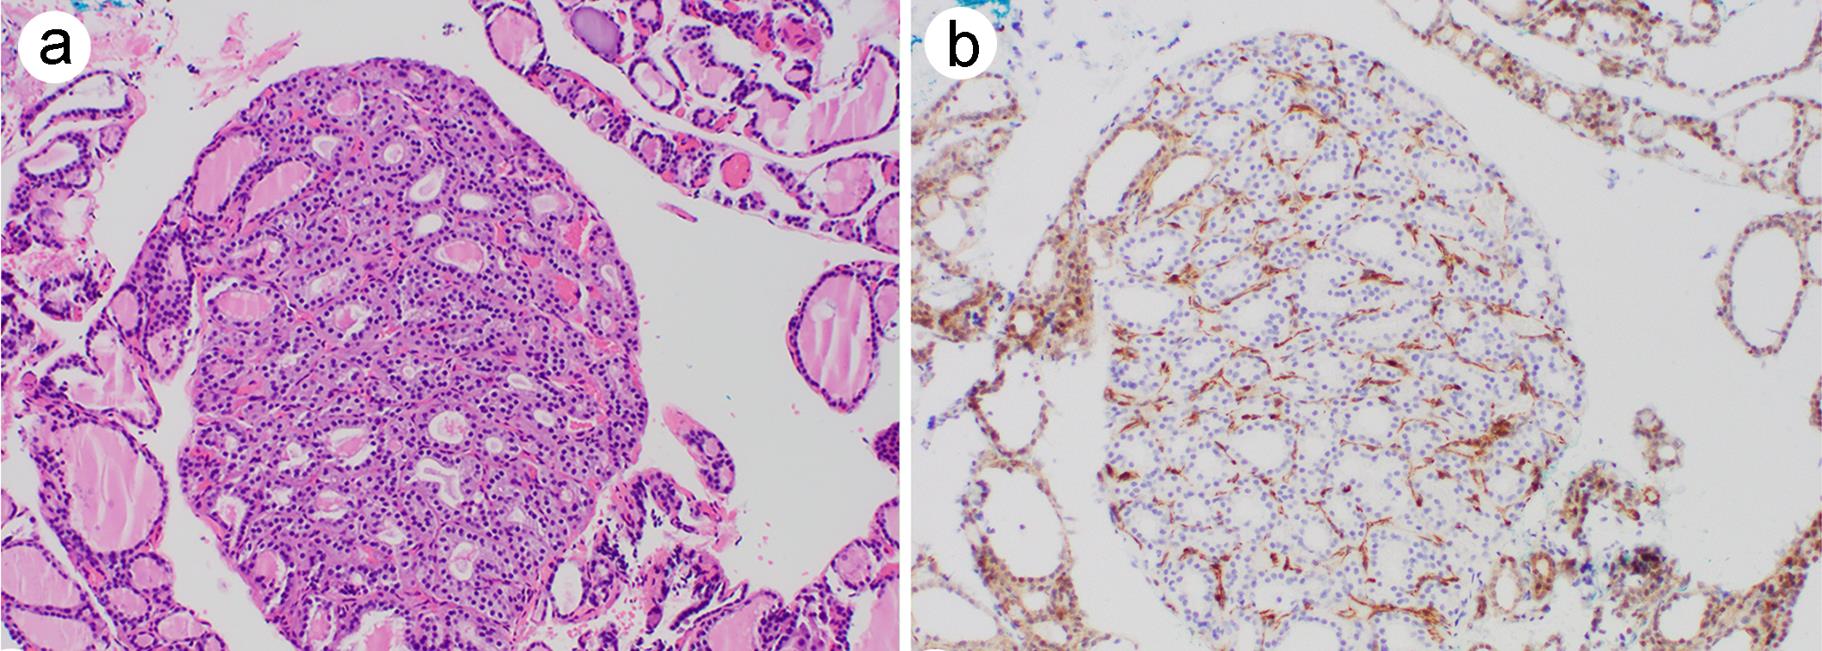 PTEN loss in the benign adenomatous nodule.